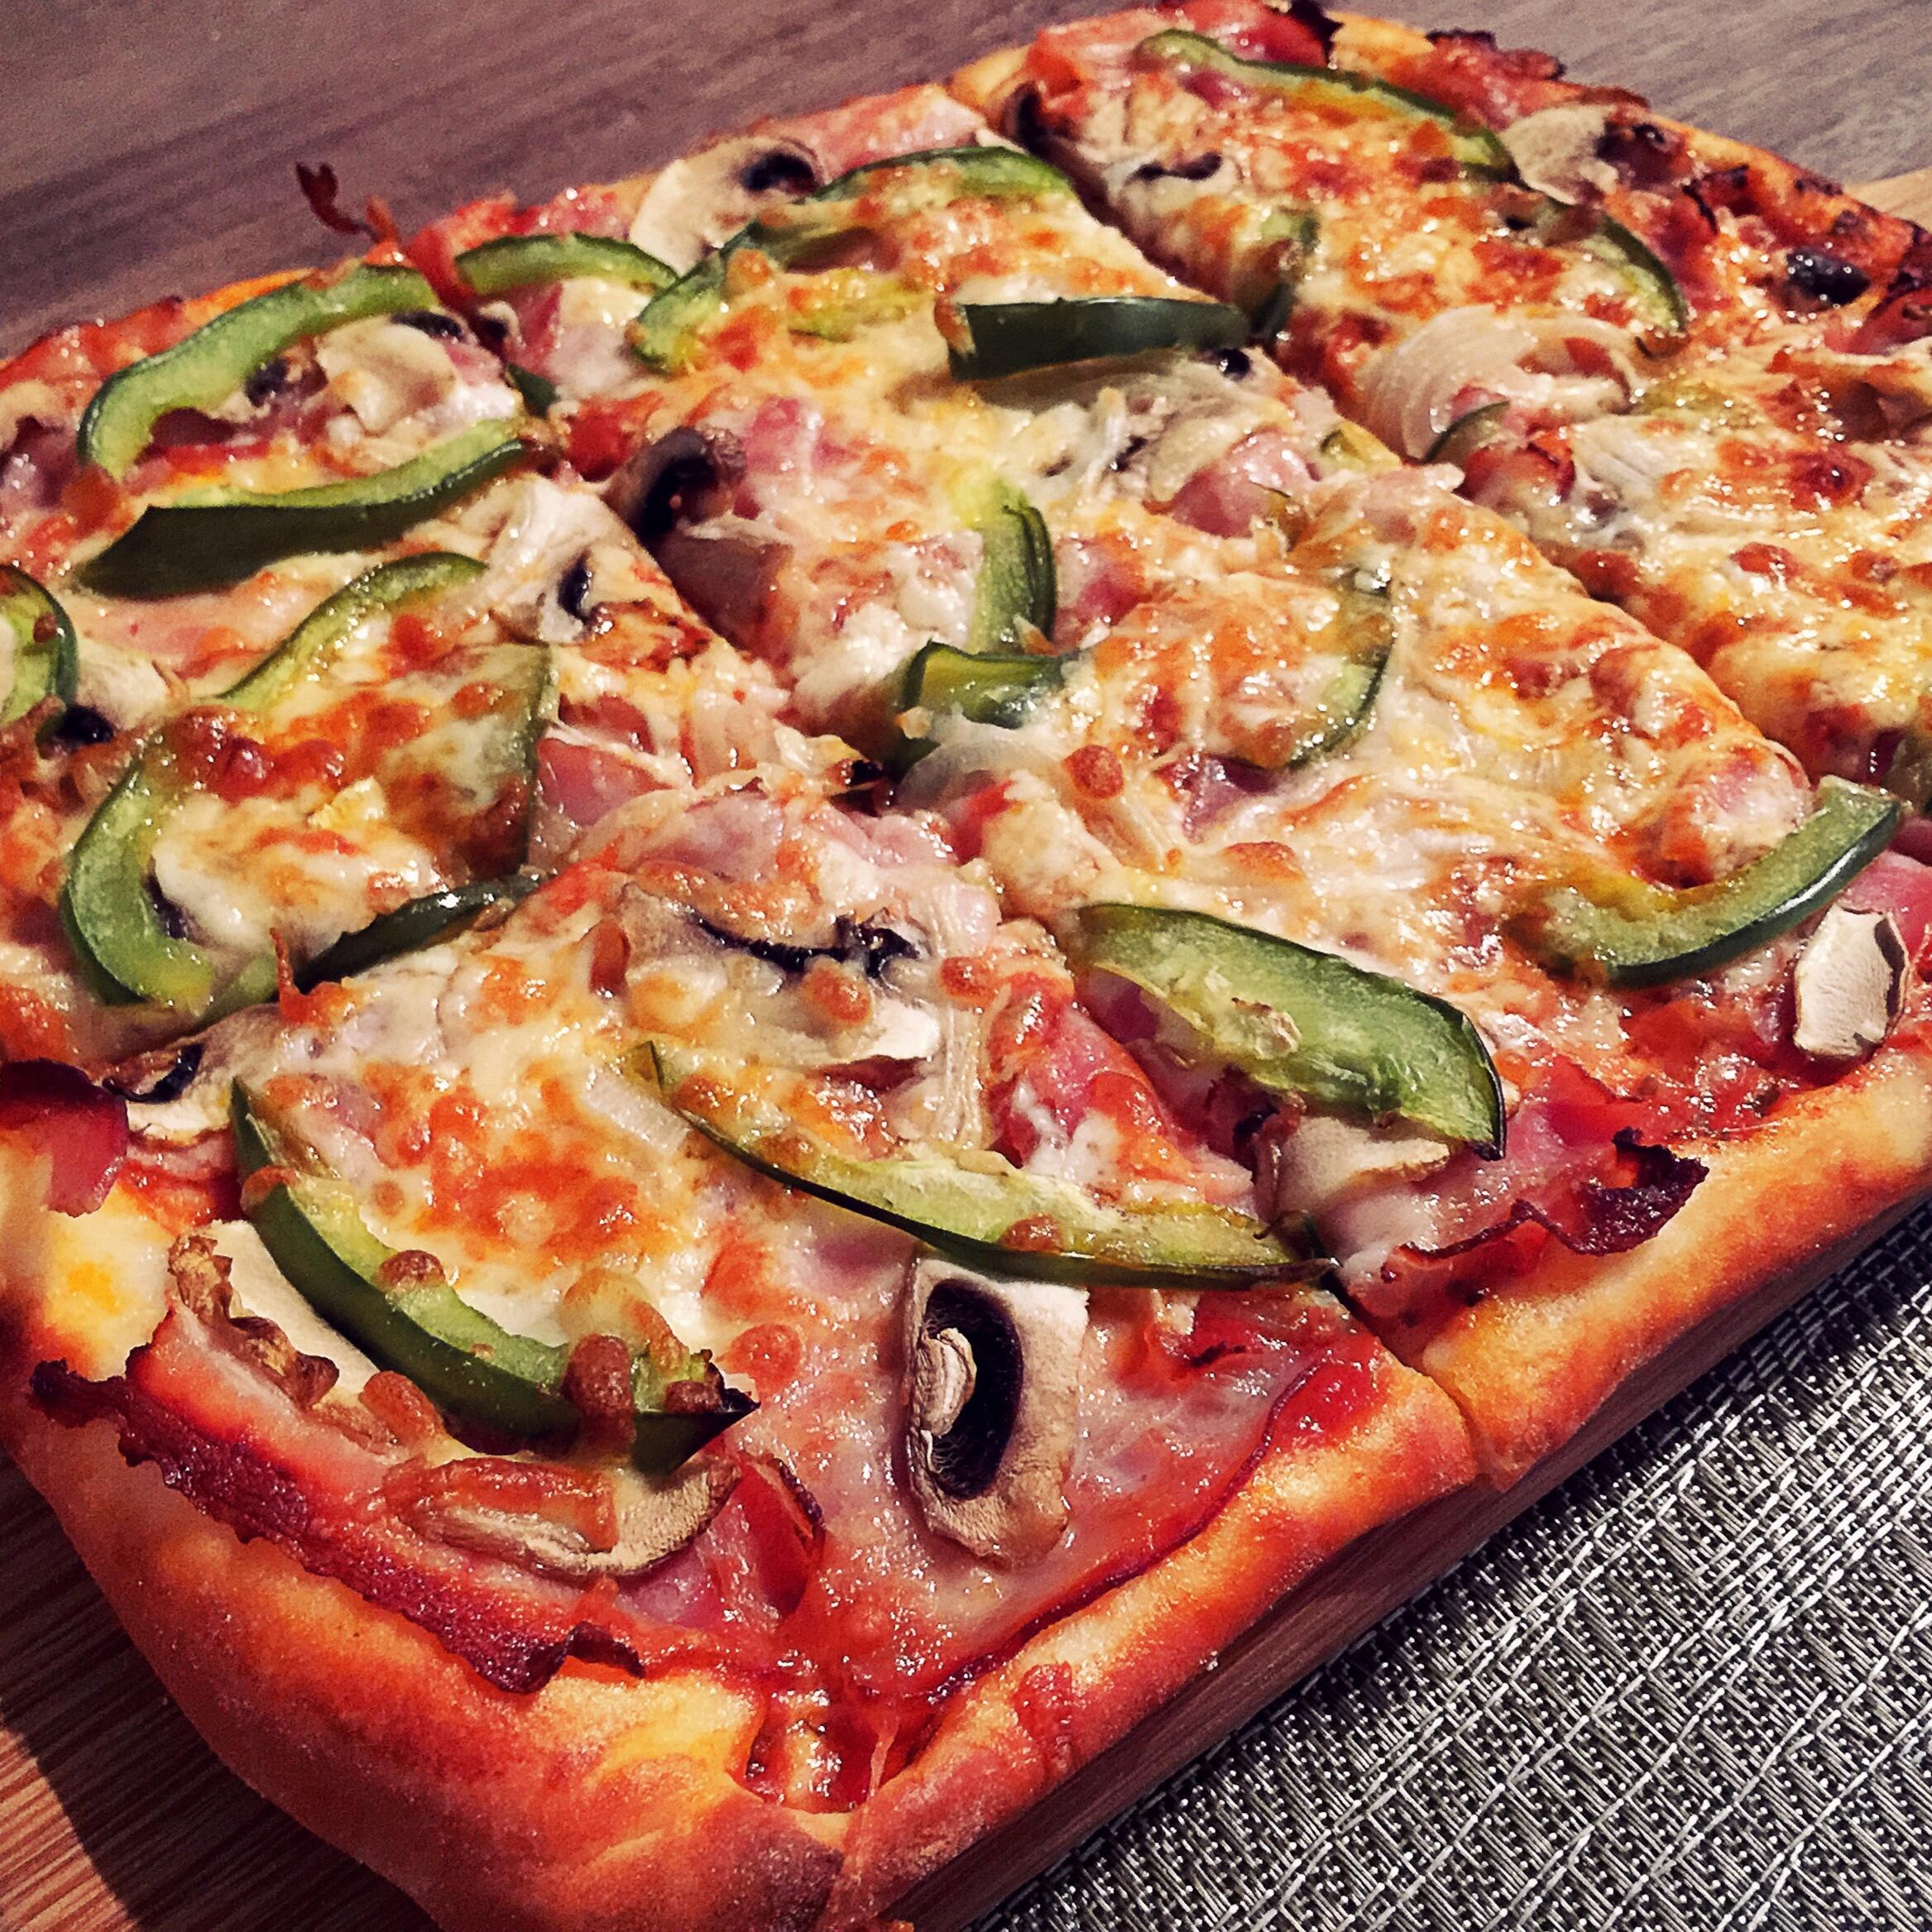 培根蔬菜pizza 面包机版